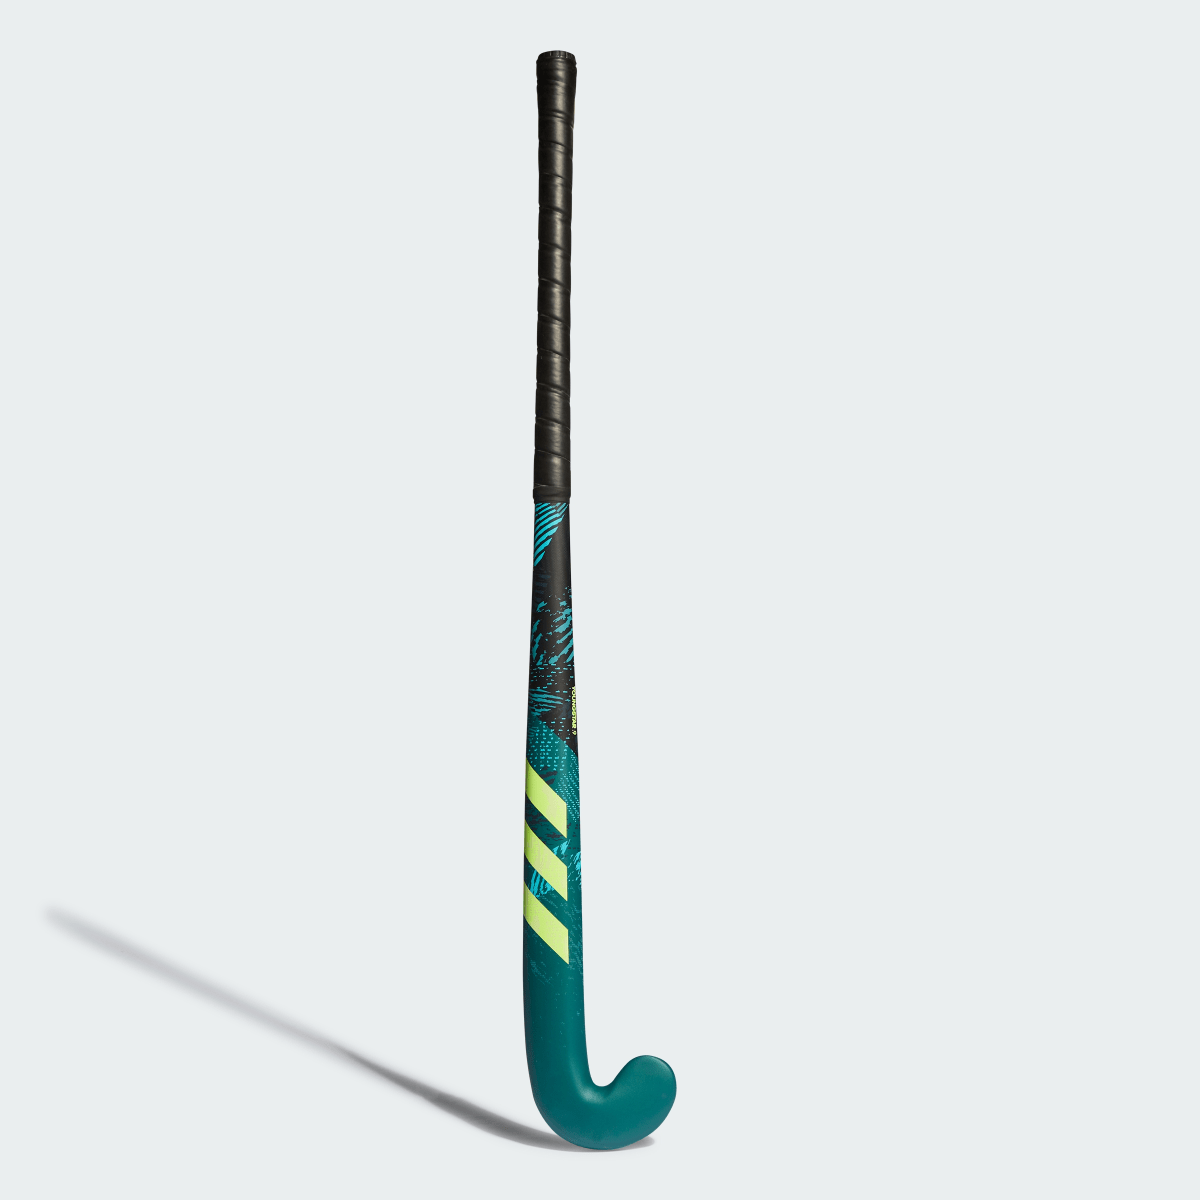 Adidas Youngstar.9 61 cm Field Hockey Stick. 2